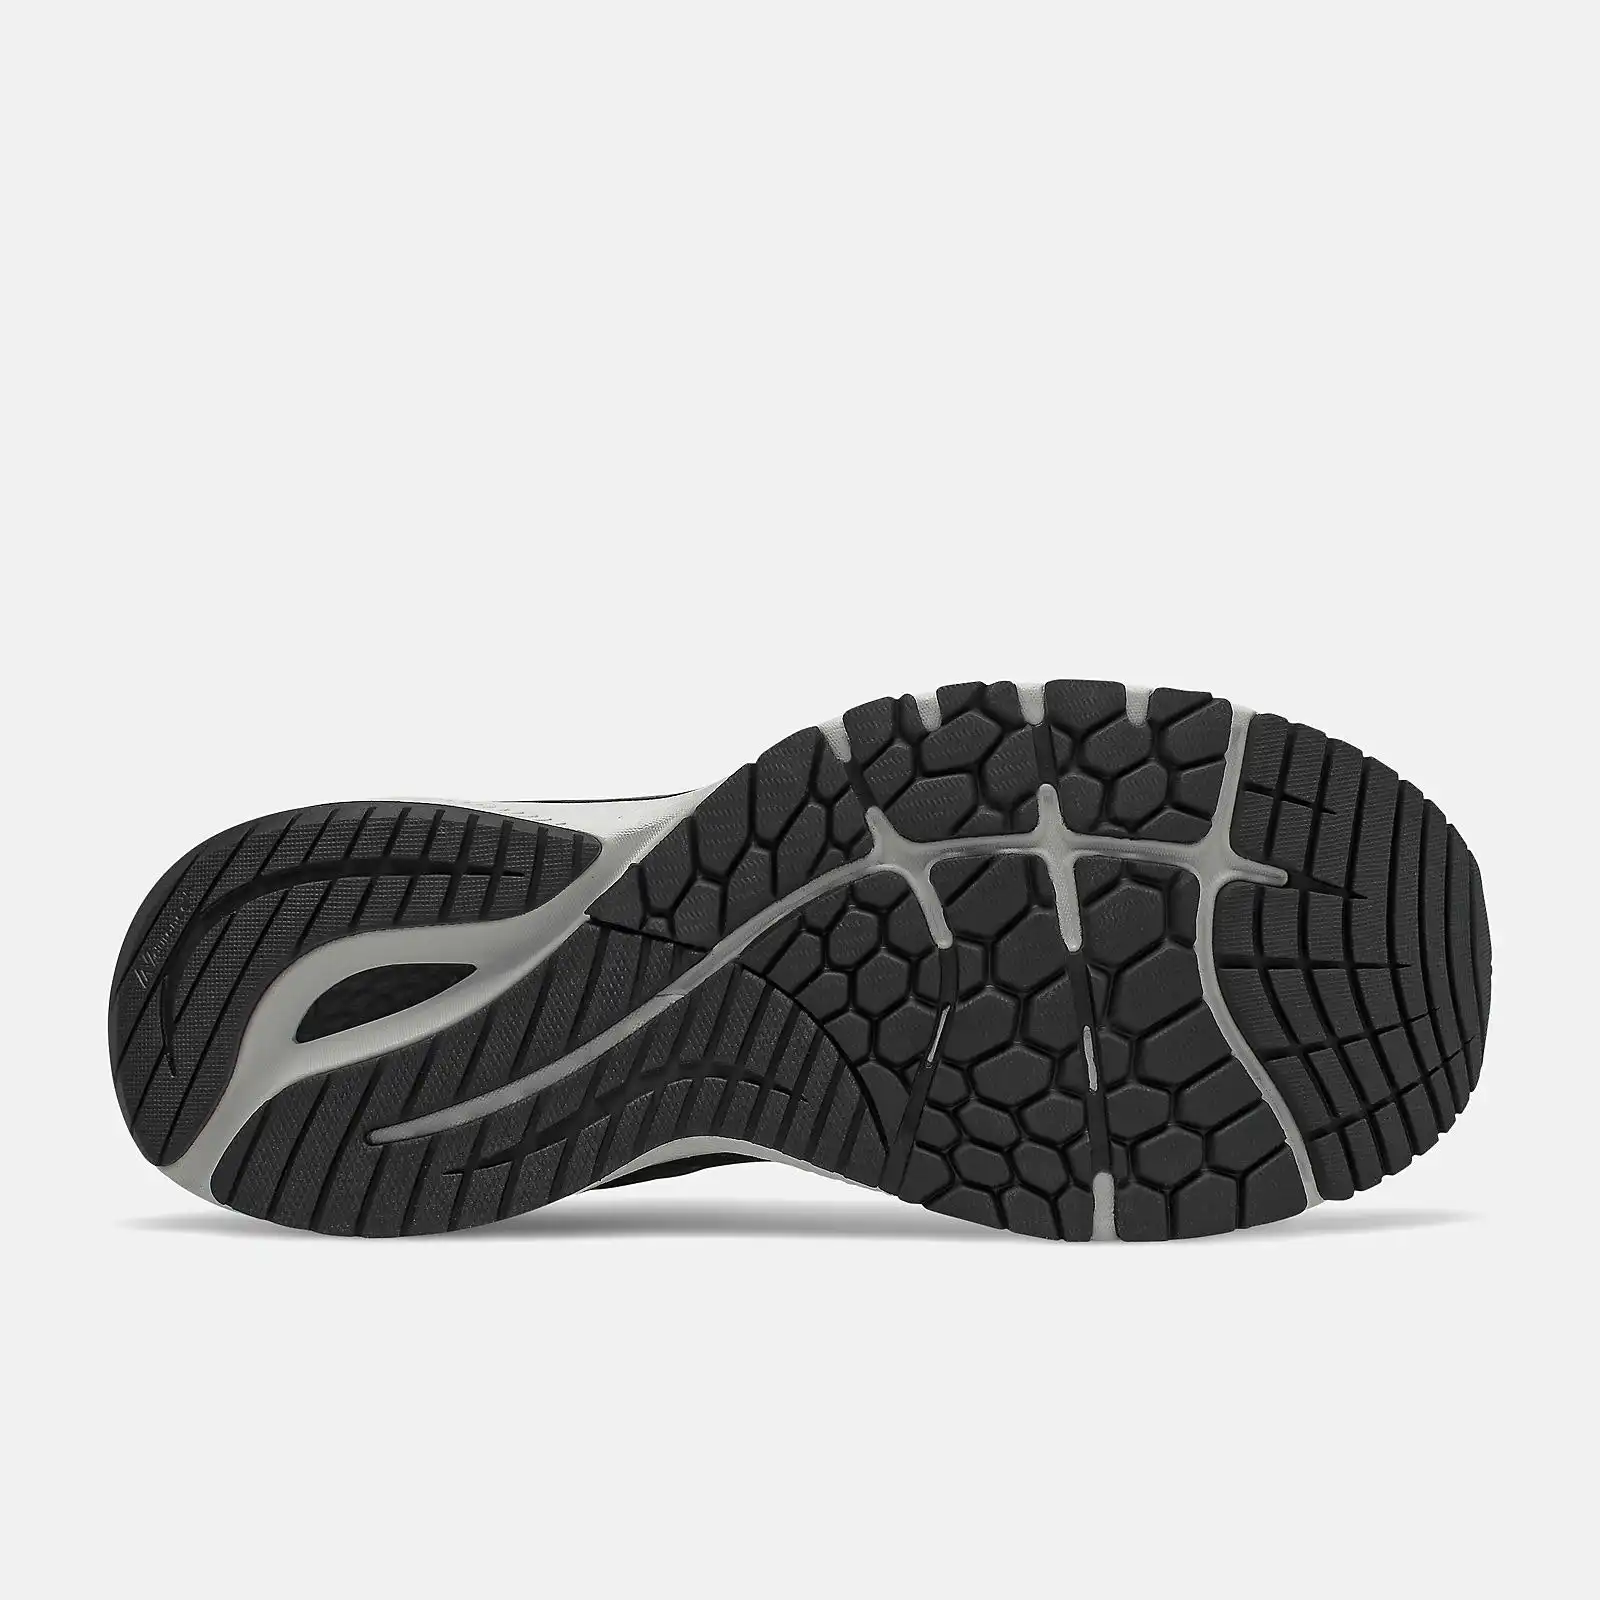 New Balance Men's Fresh Foam X 860 V12 Shoes Sneakers Runners - Black/White